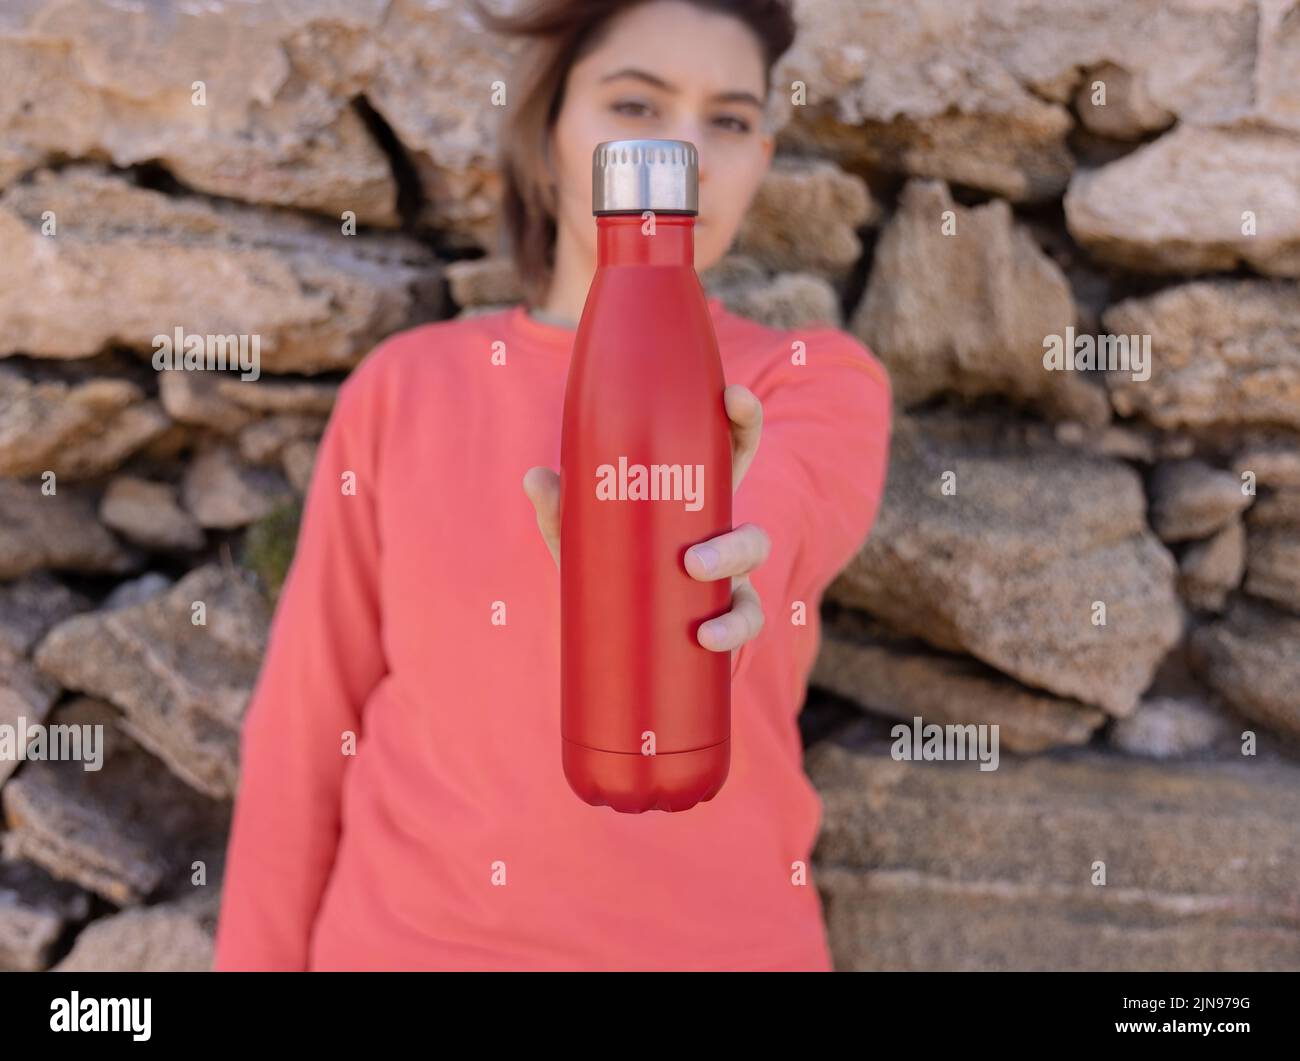 Ernsthafter Teenager im pinken Hoodie mit roter Wasserflasche in der Hand, die straight aussieht. Kurzhaarige Teenager-Mädchen, die sich im Freien in der Nähe einer Steinmauer aufhalten. Kleidung und r Stockfoto